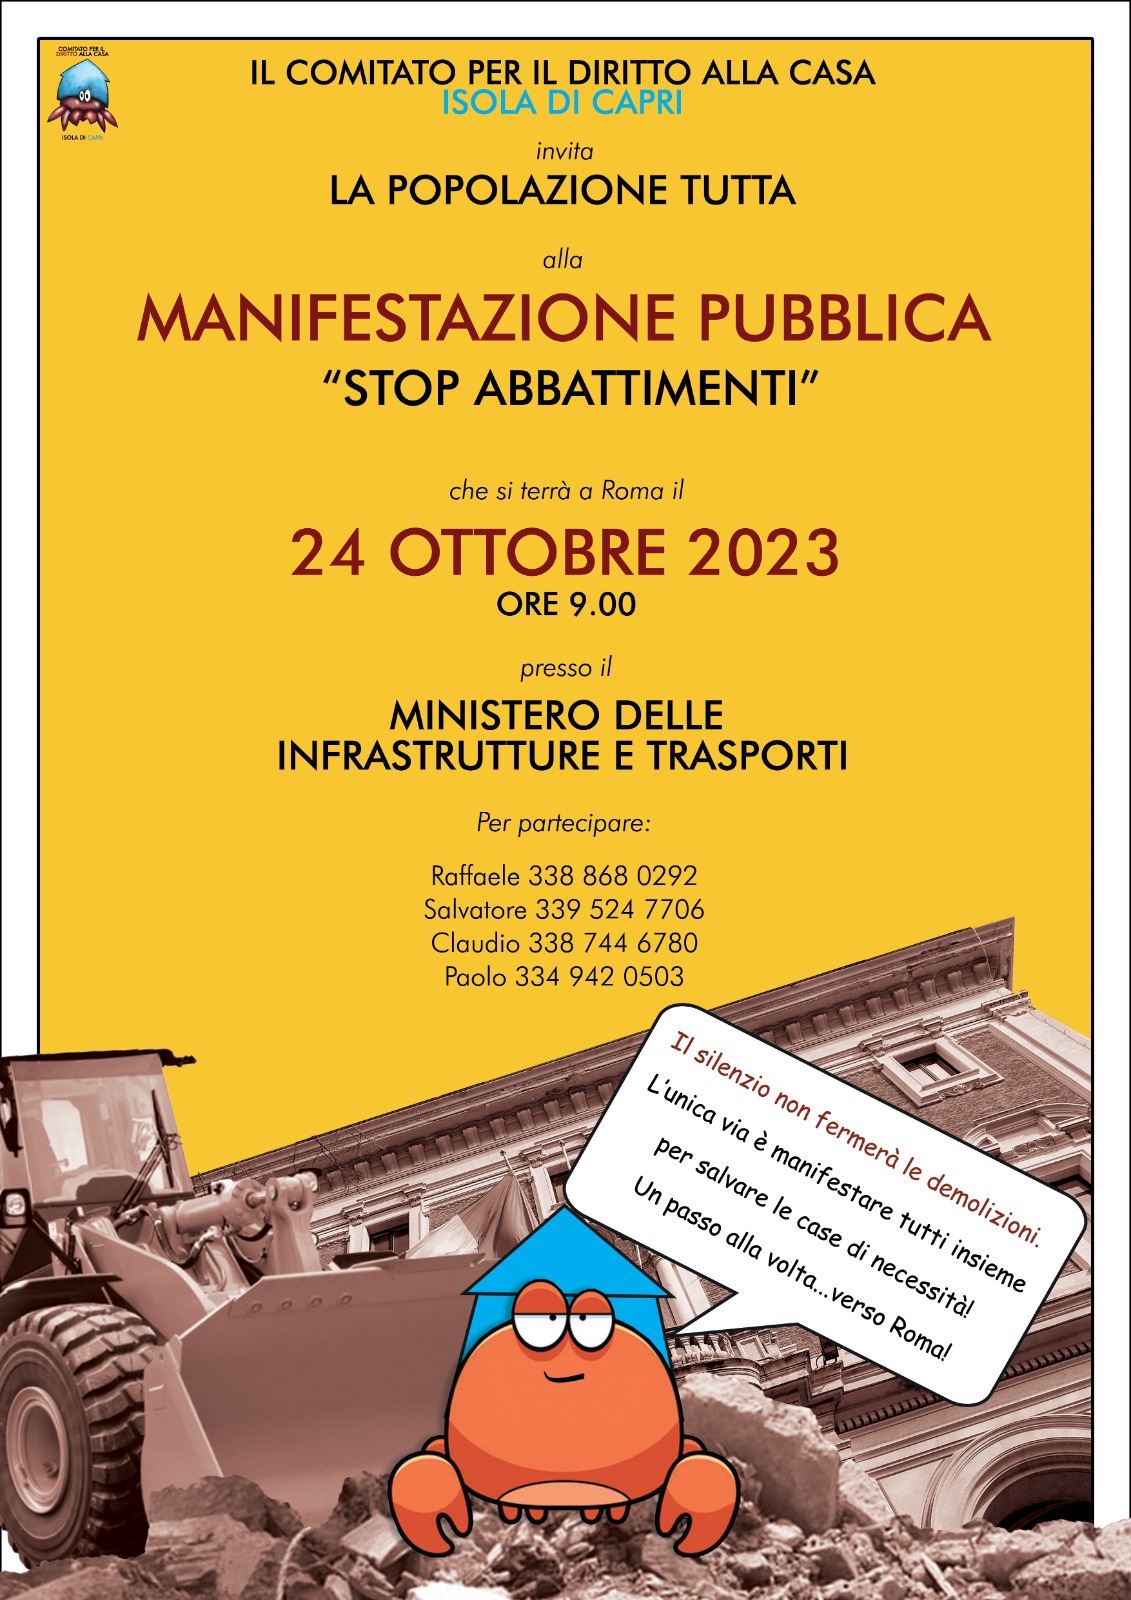 Stop abbattimenti, manifestazione a Roma: si mobilita il comitato per il diritto alla casa dell’isola di Capri